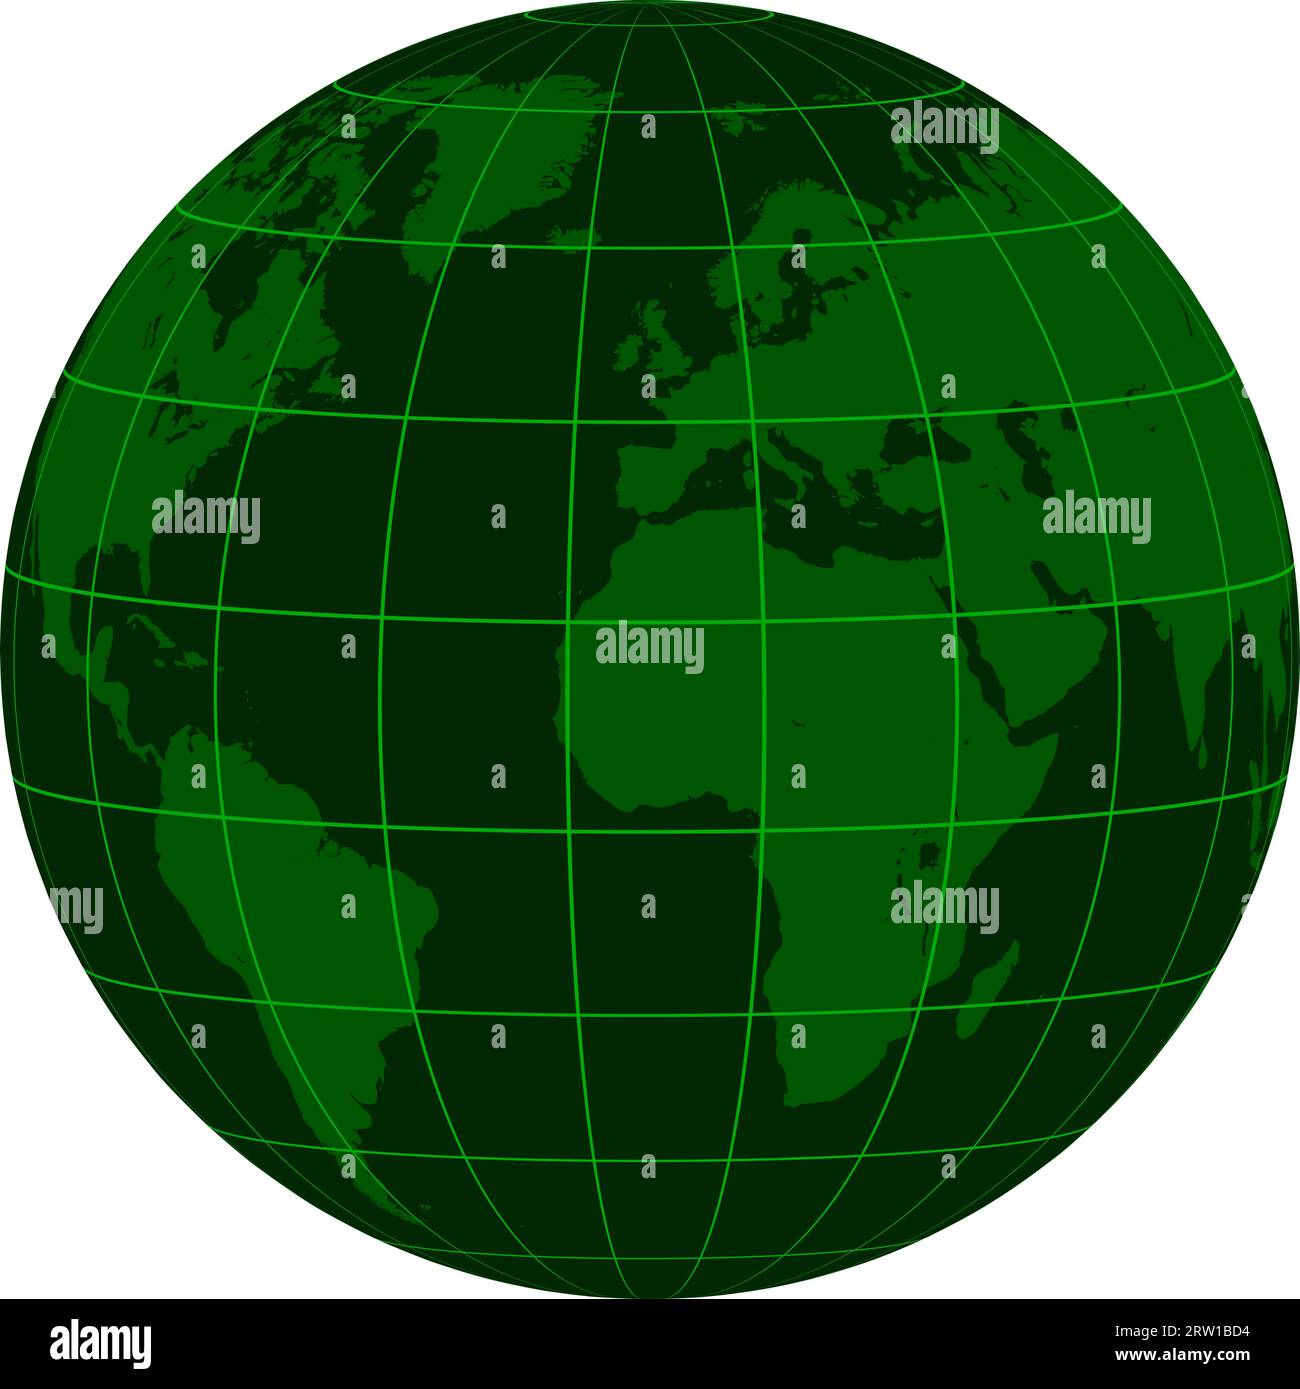 Modèle Terre globe continents grille coordonnée, crise de matrice vert foncé Illustration de Vecteur